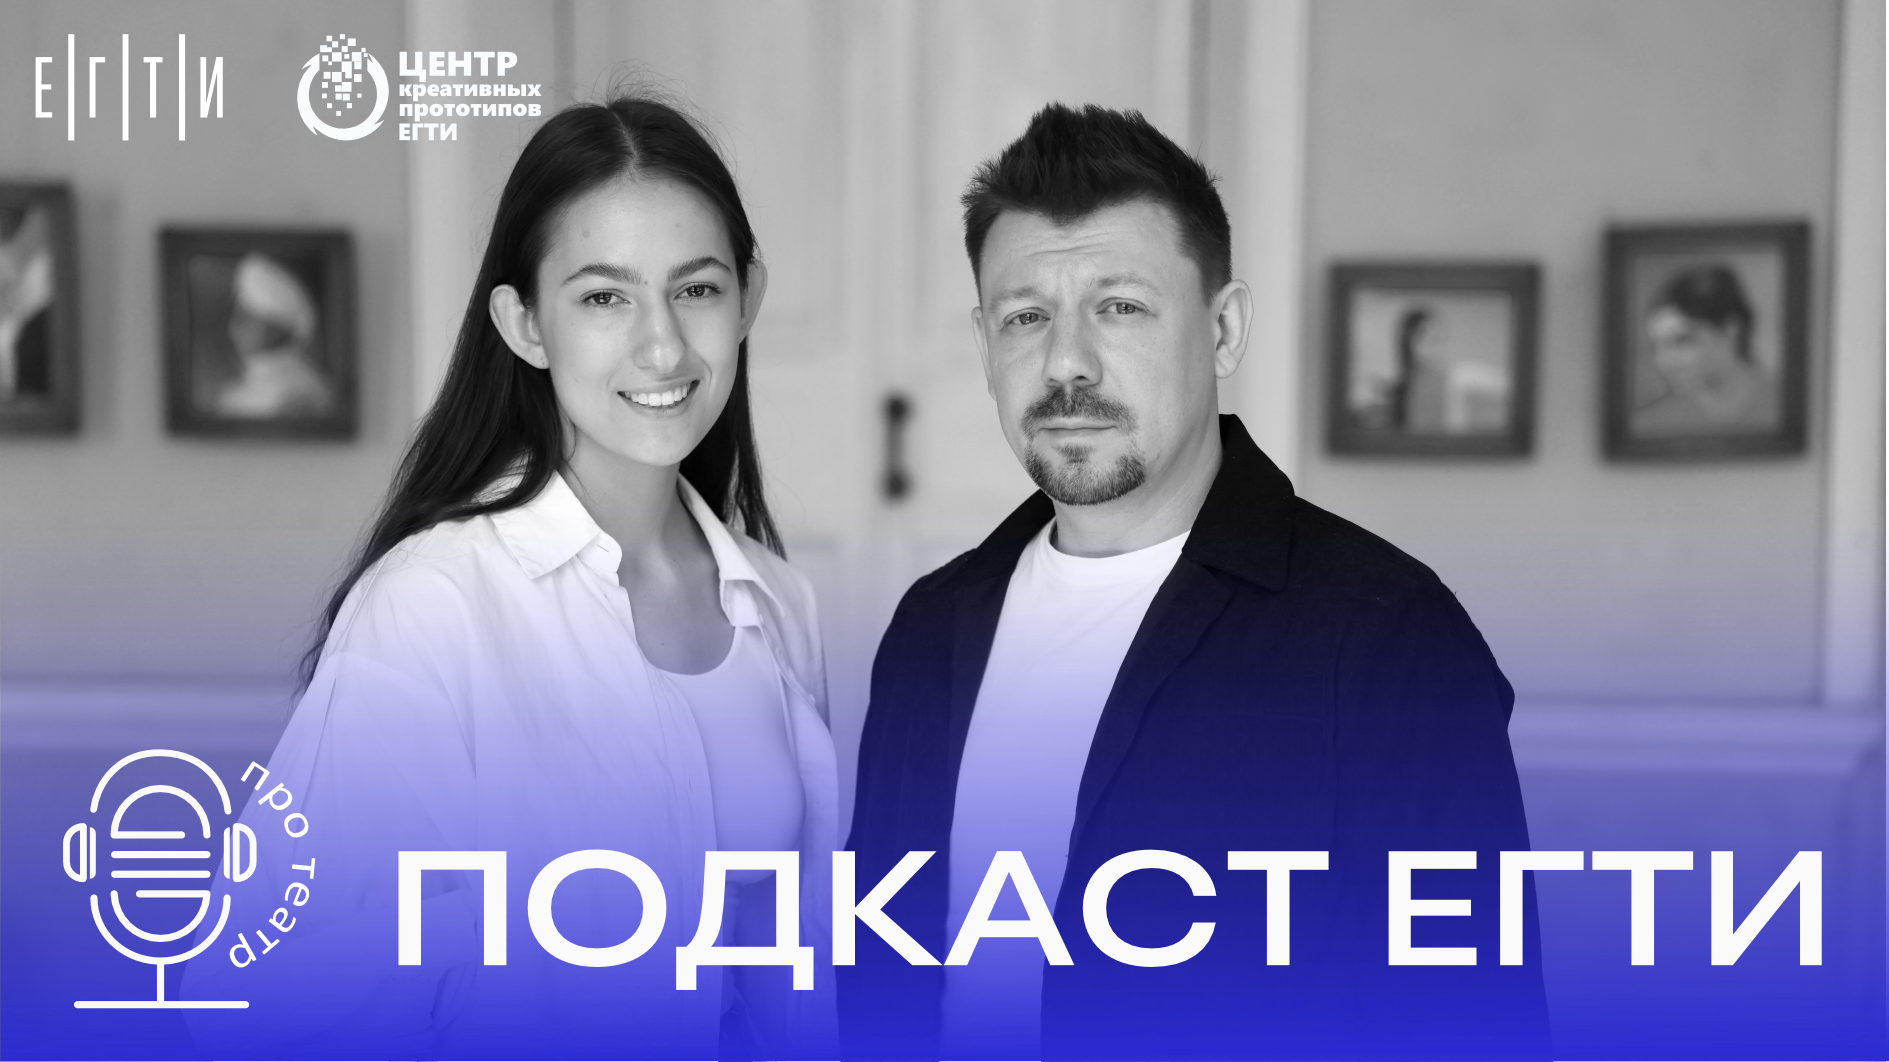 Студенческий подкаст ЕГТИ "Про театр": Разговор с Антоном Нестеренко